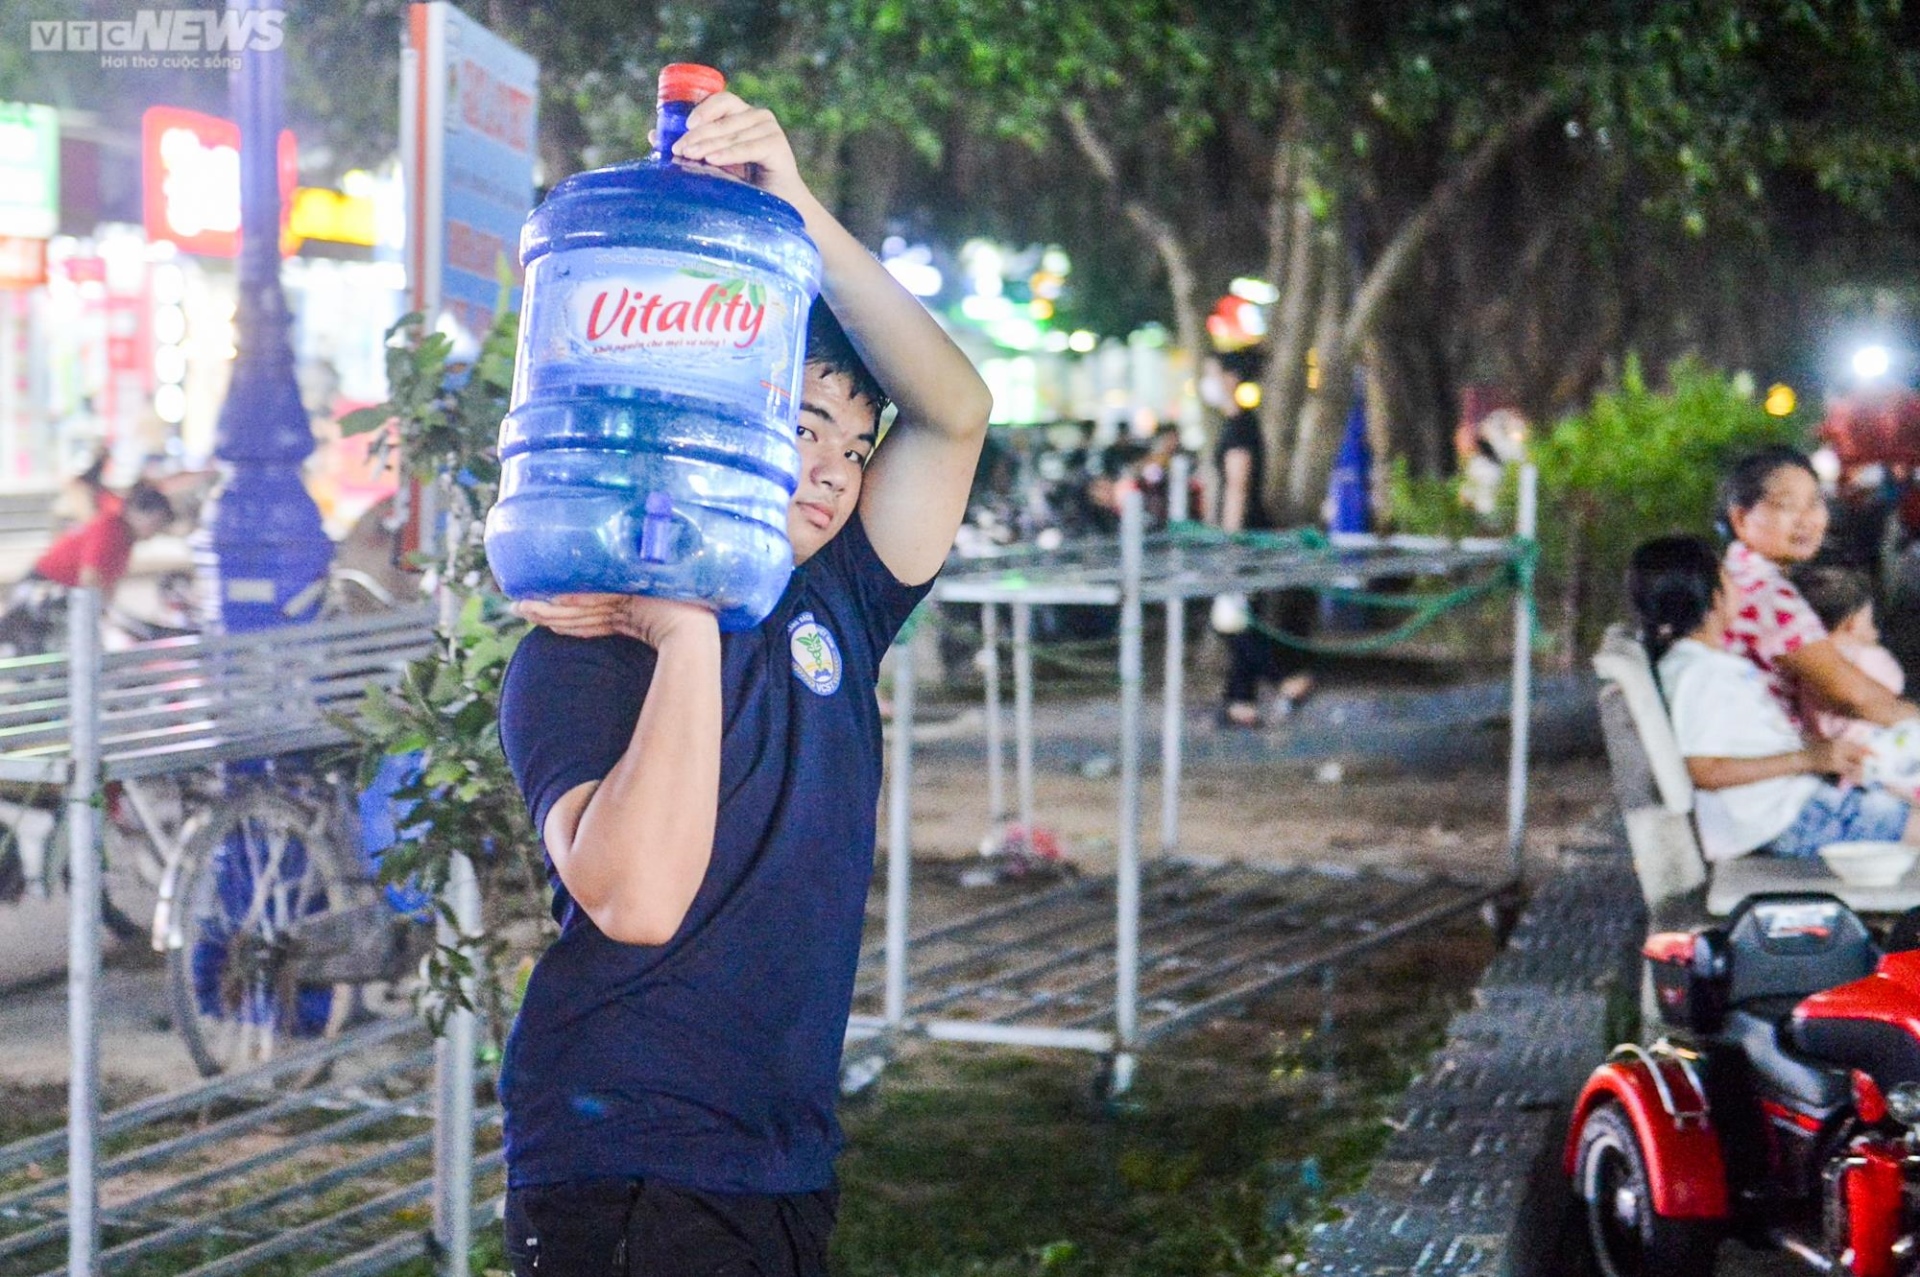 Chung cư ở Hà Nội mất nước, dân lỉnh kỉnh xô chậu đi mua nước trong đêm - Ảnh 10.